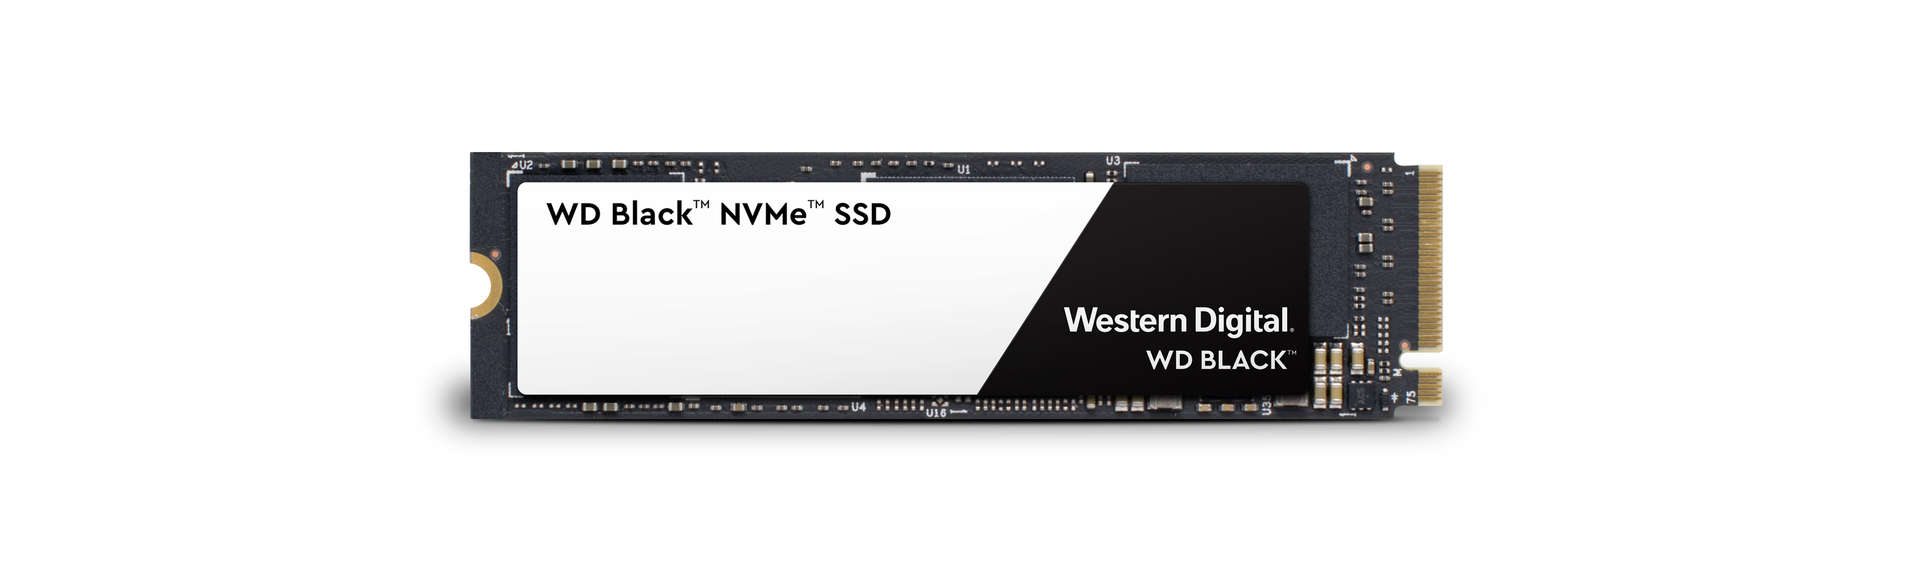 Black 3D NVMe SSD